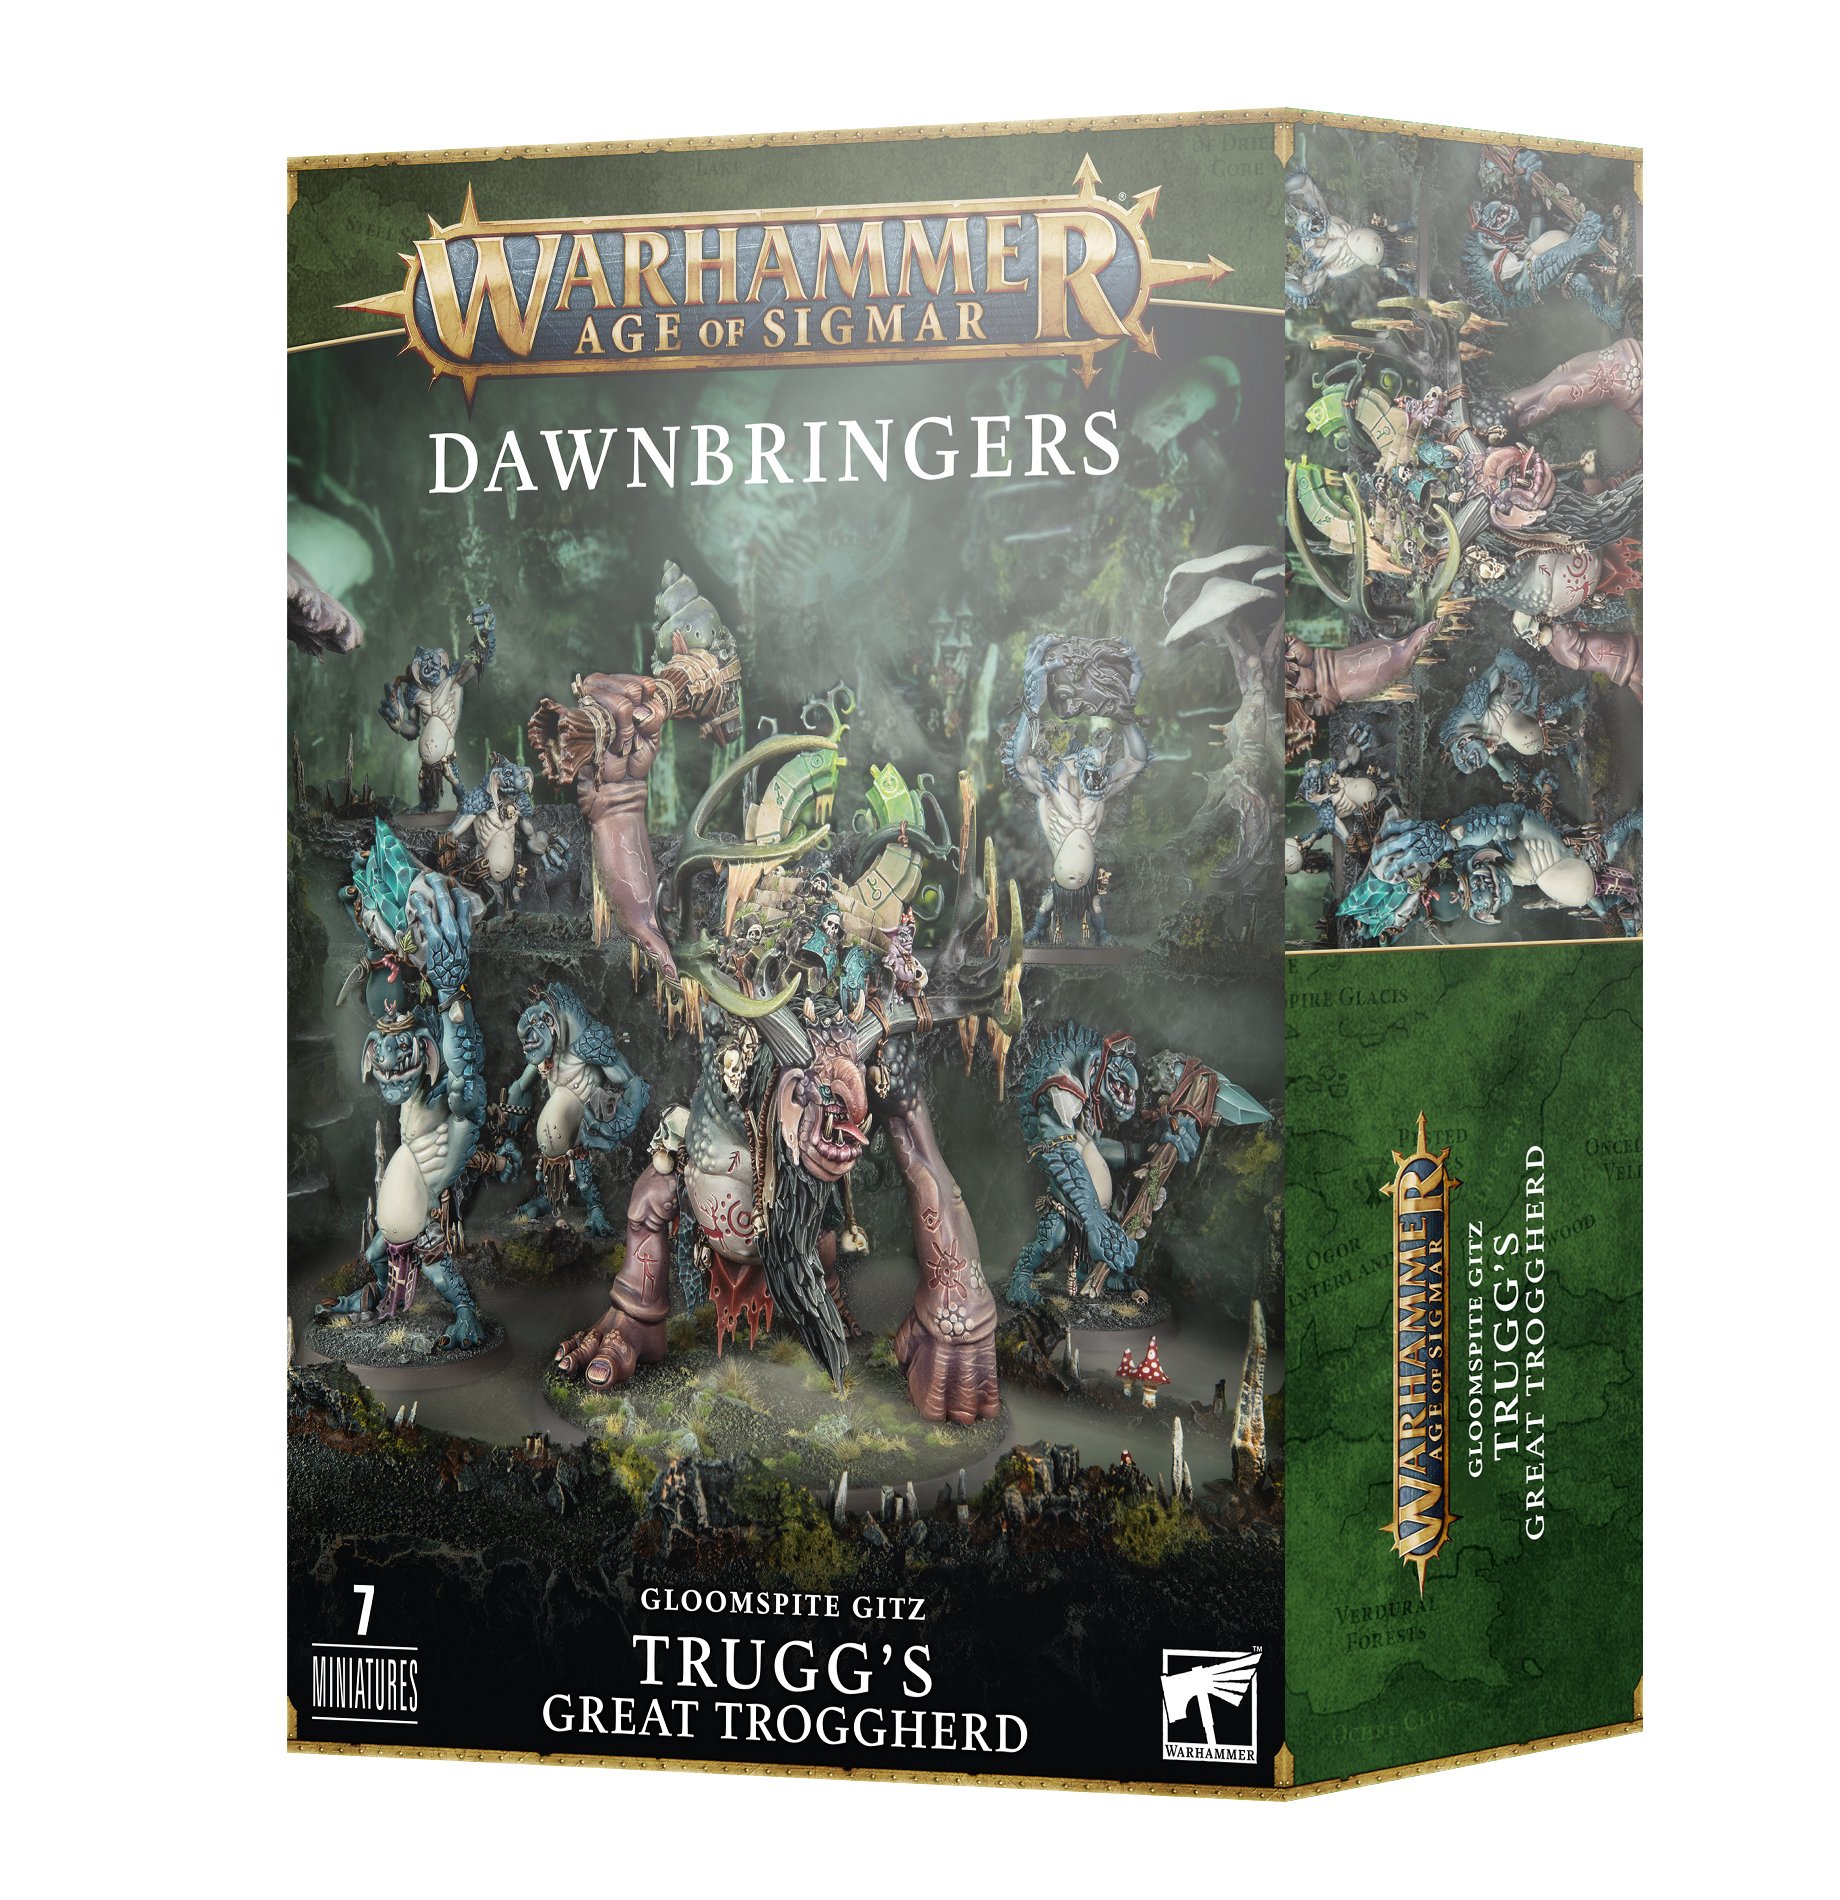 Warhammer Age of Sigmar: Dawnbringers: Gloomspite Gitz: Truggs Great Troggherd 